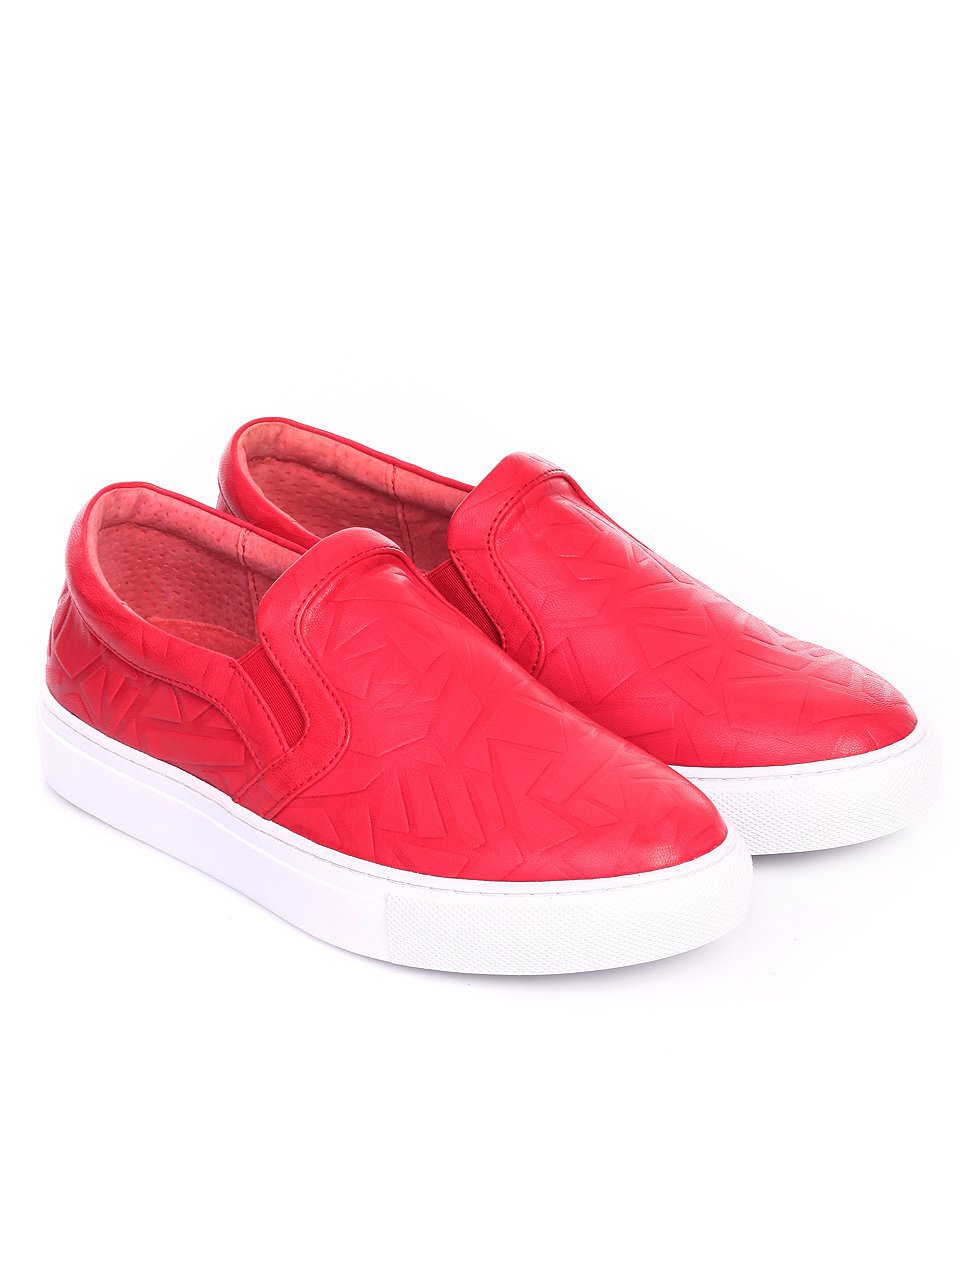 Ежедневни дамски обувки от естествена кожа 3I-17272 red